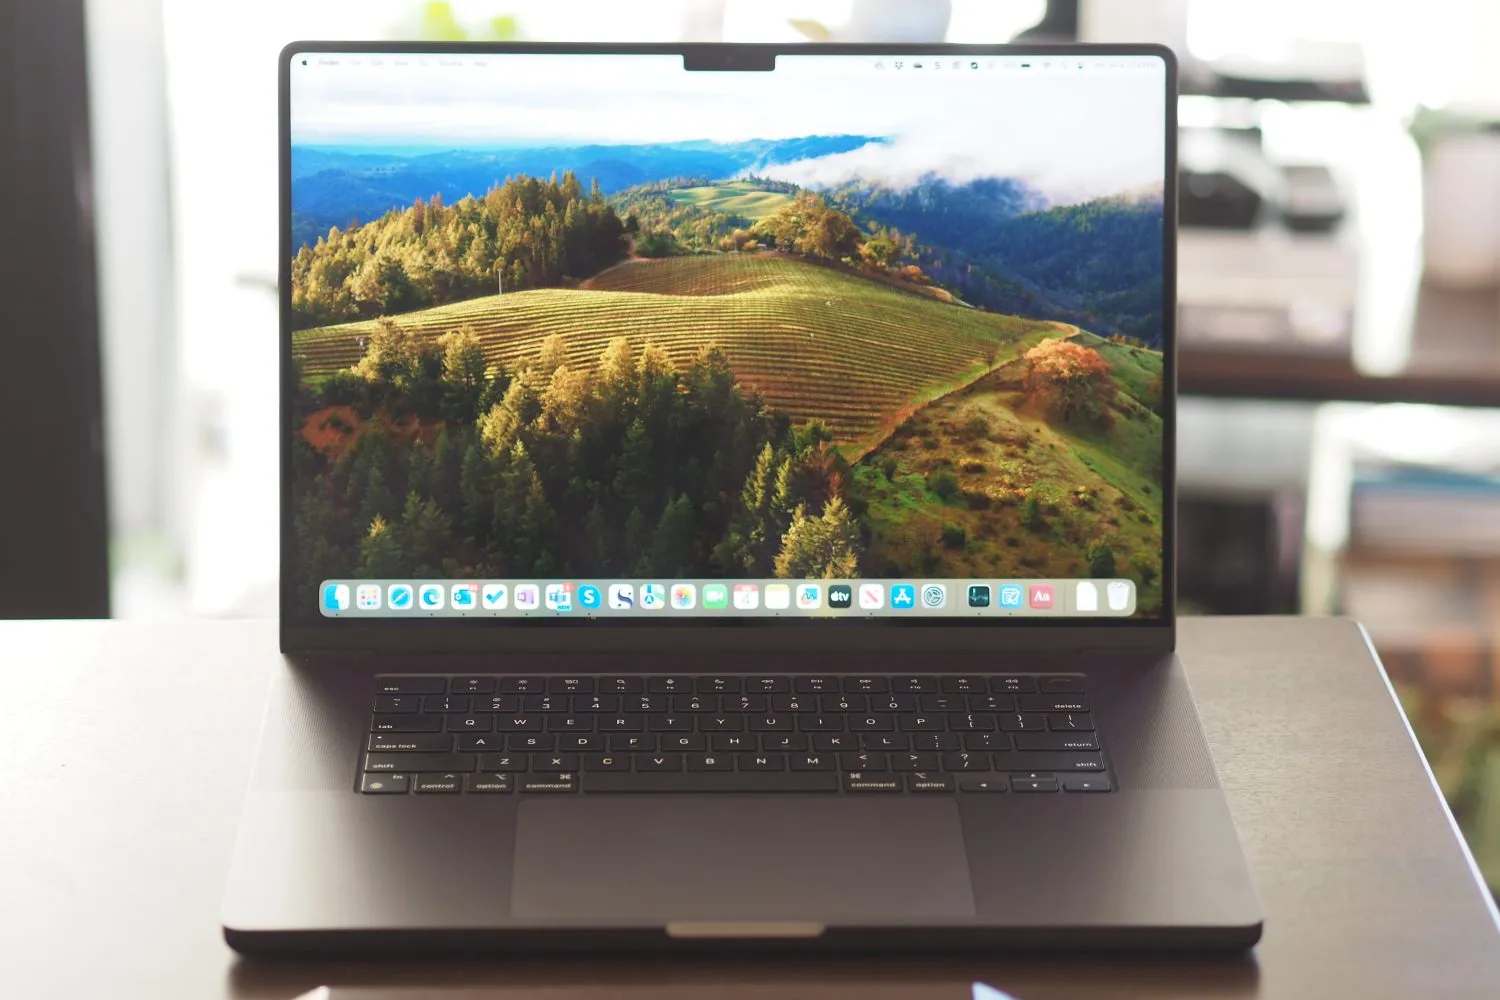 Фронтальный вид Apple MacBook Pro 16, показывающий дисплей и клавиатуру.